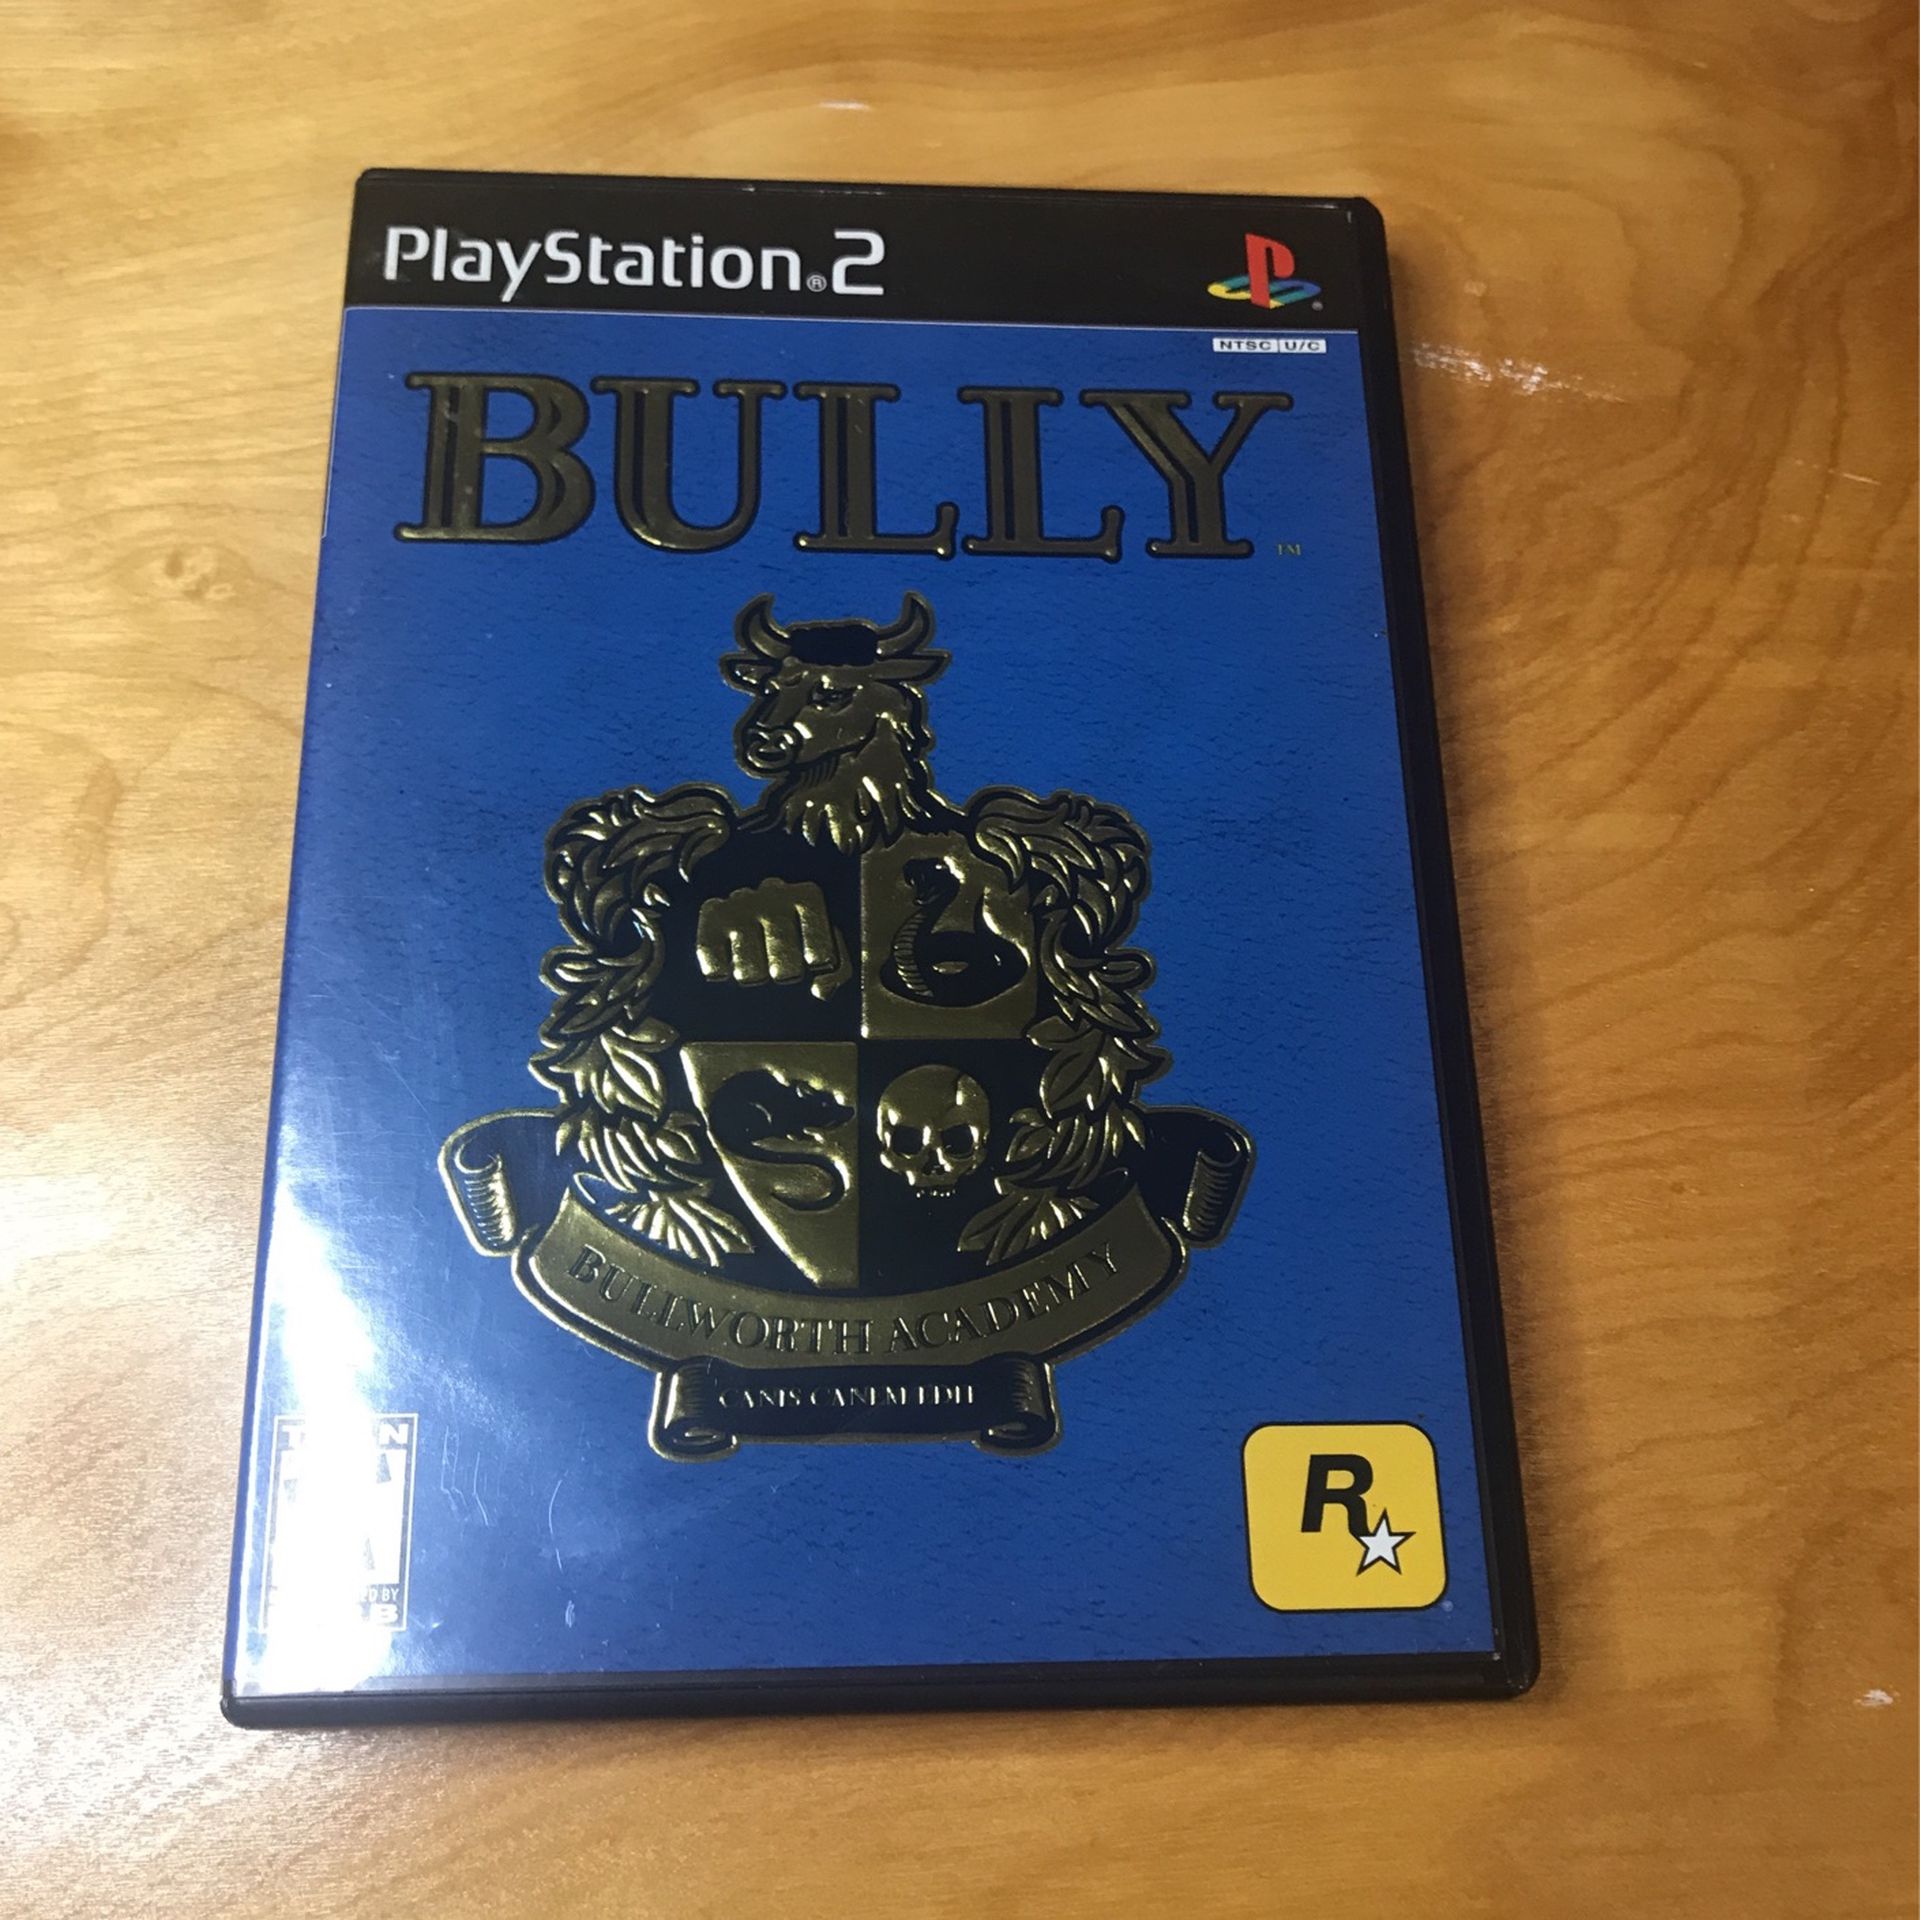 BULLY - PS2